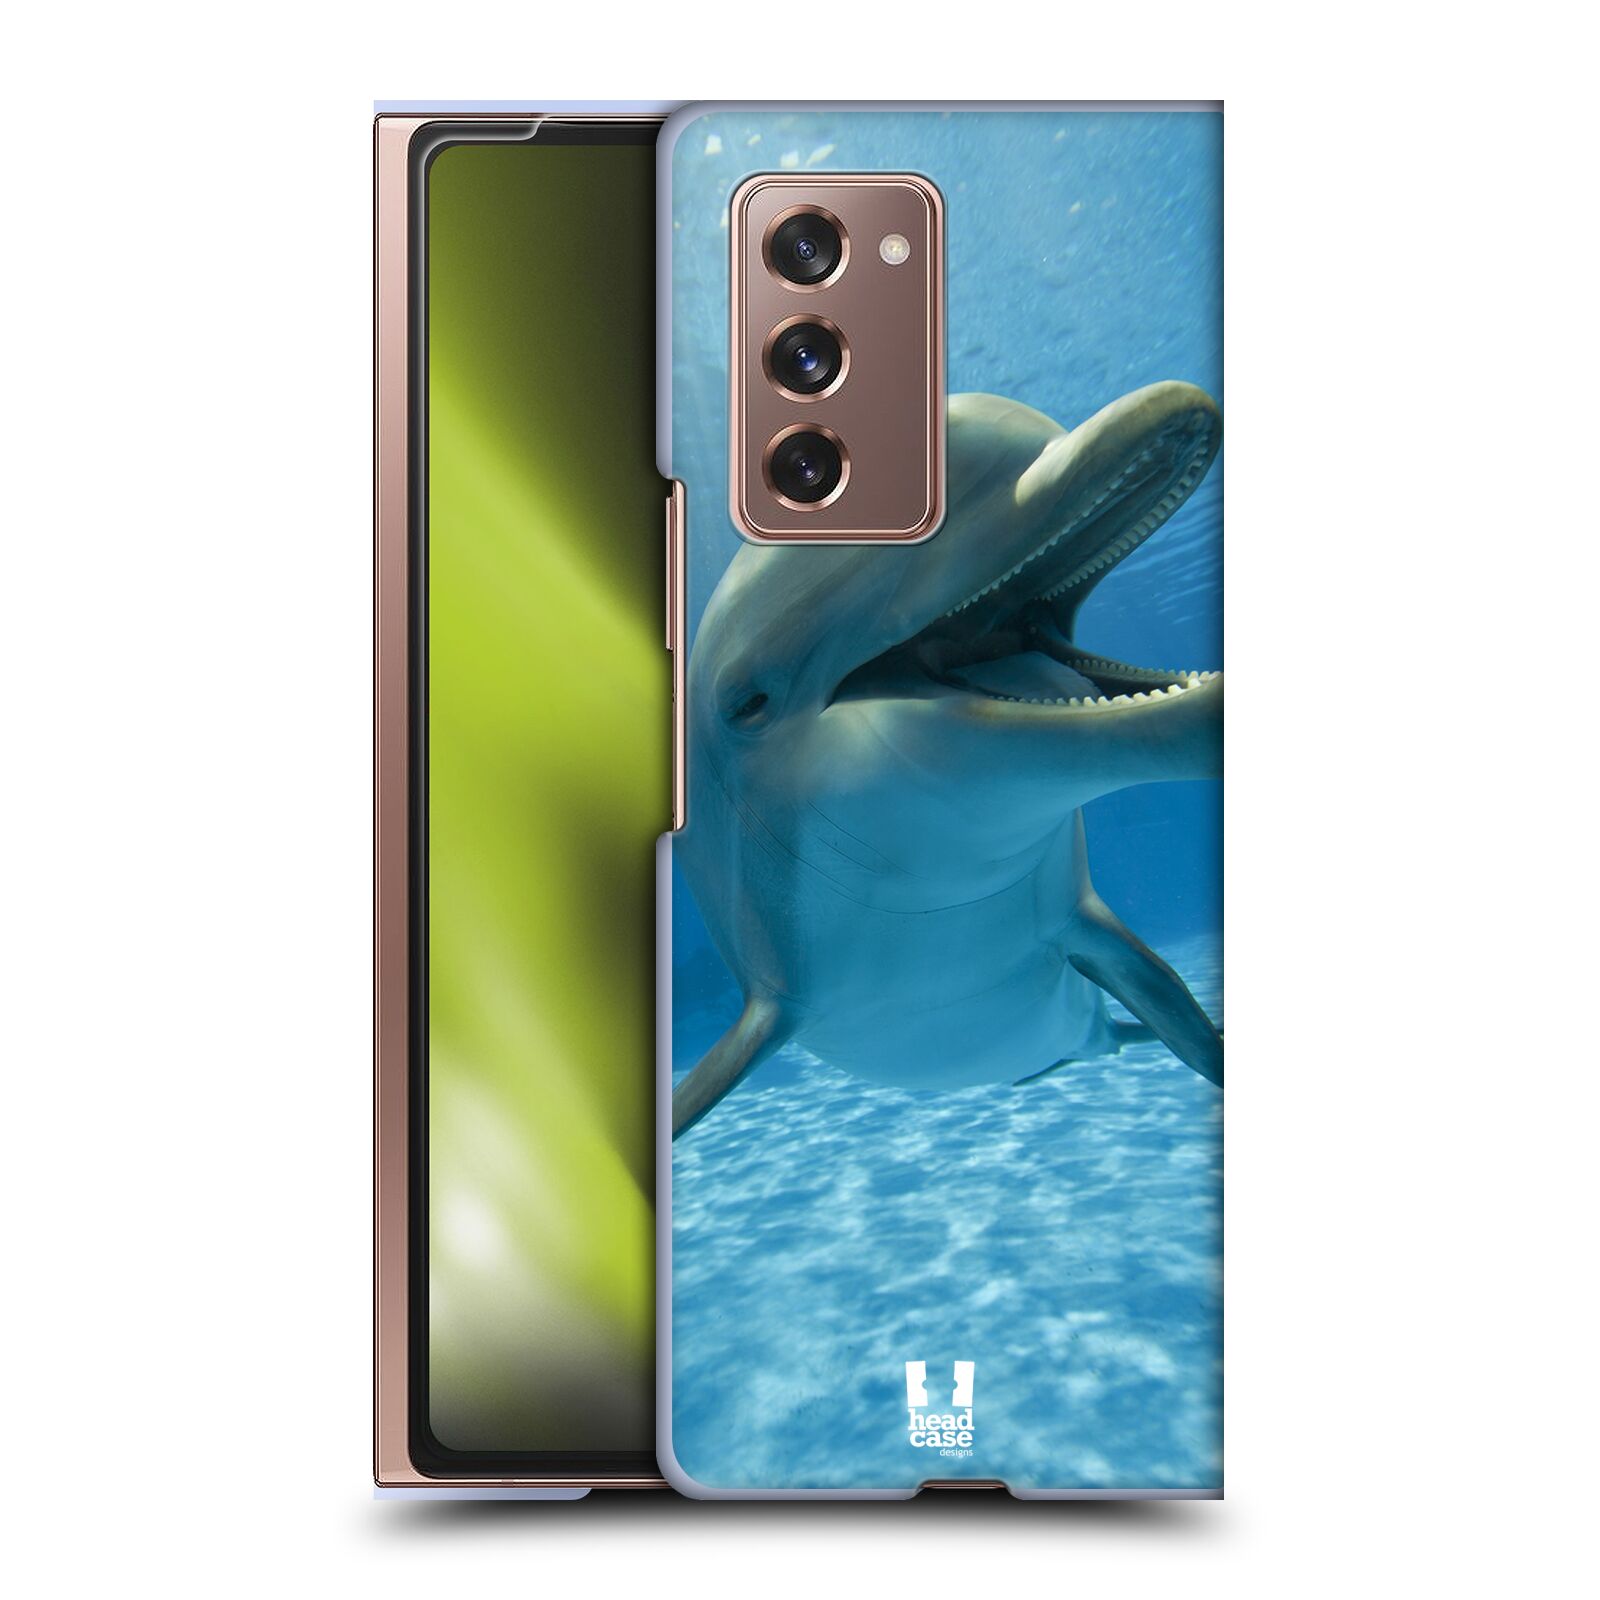 Zadní obal pro mobil Samsung Galaxy Z Fold 2 5G - HEAD CASE - Svět zvířat delfín v moři